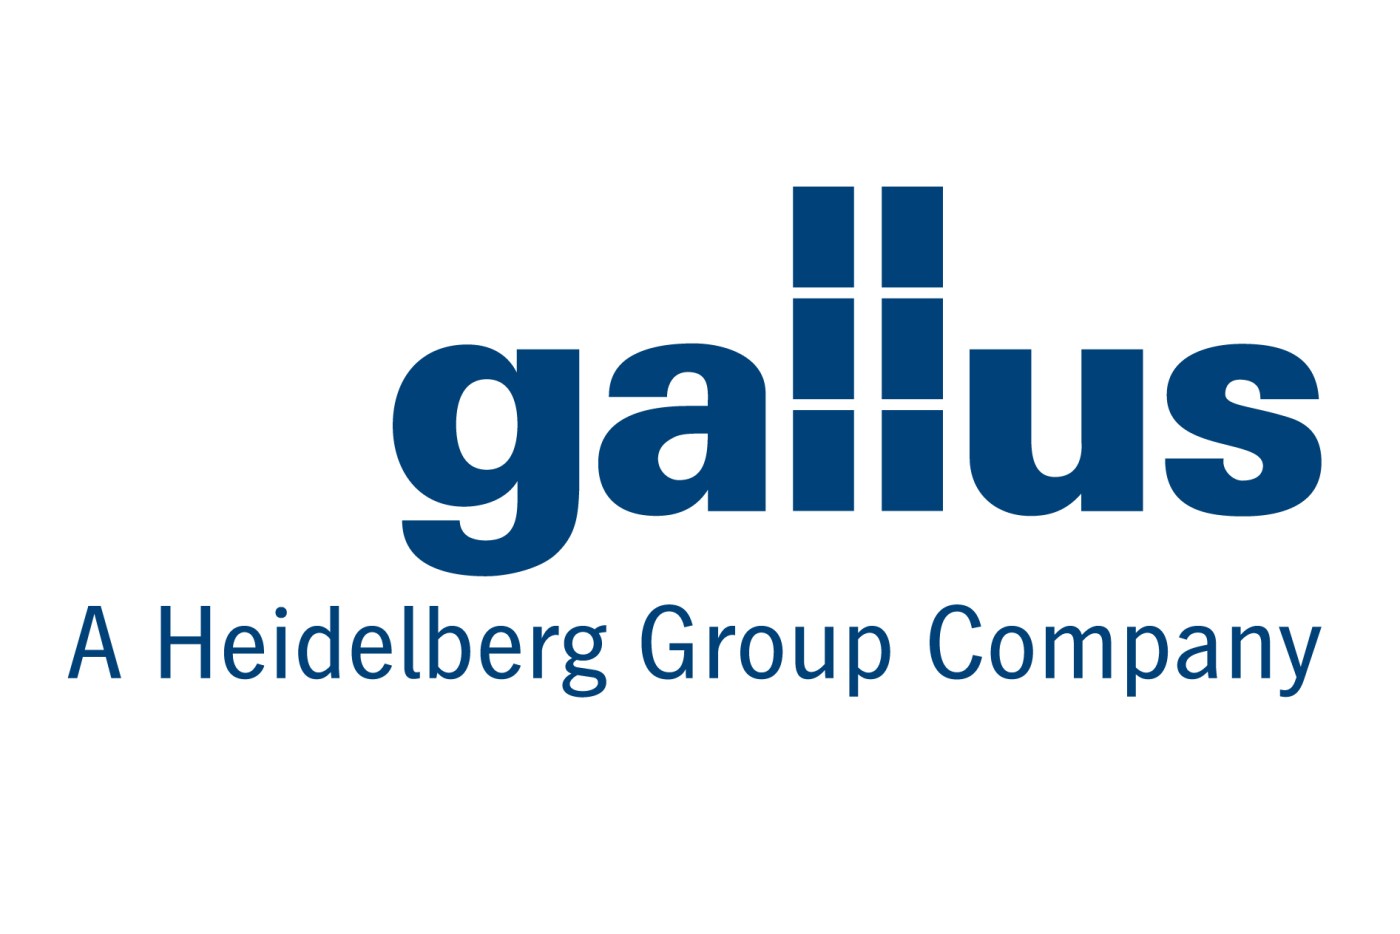  Gallus-HD_logo_blue_sRGB 